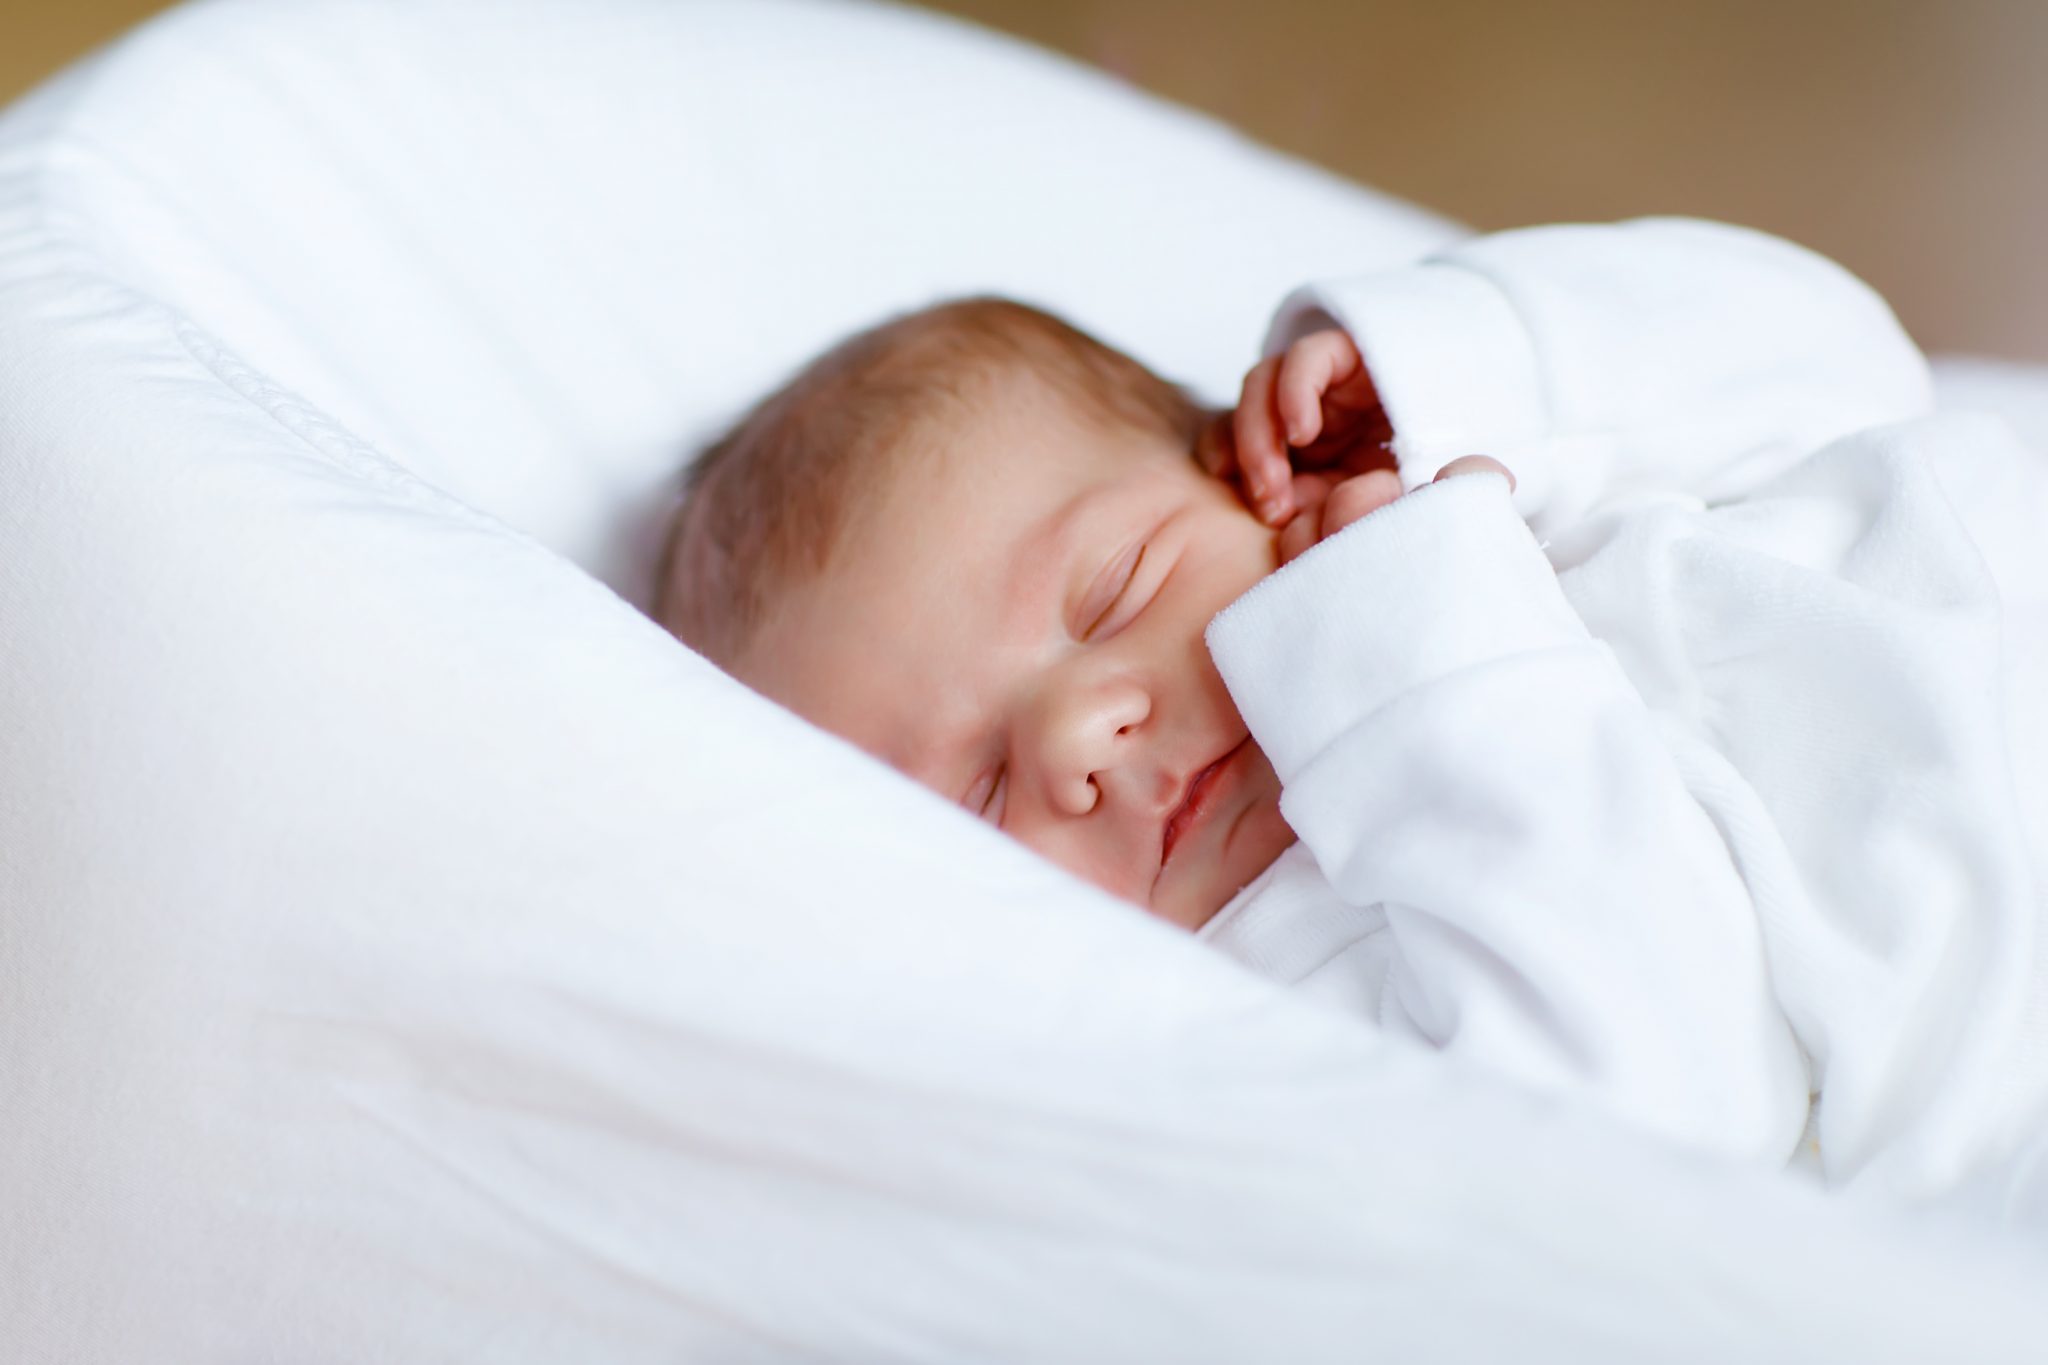  neugeborenes schlafen